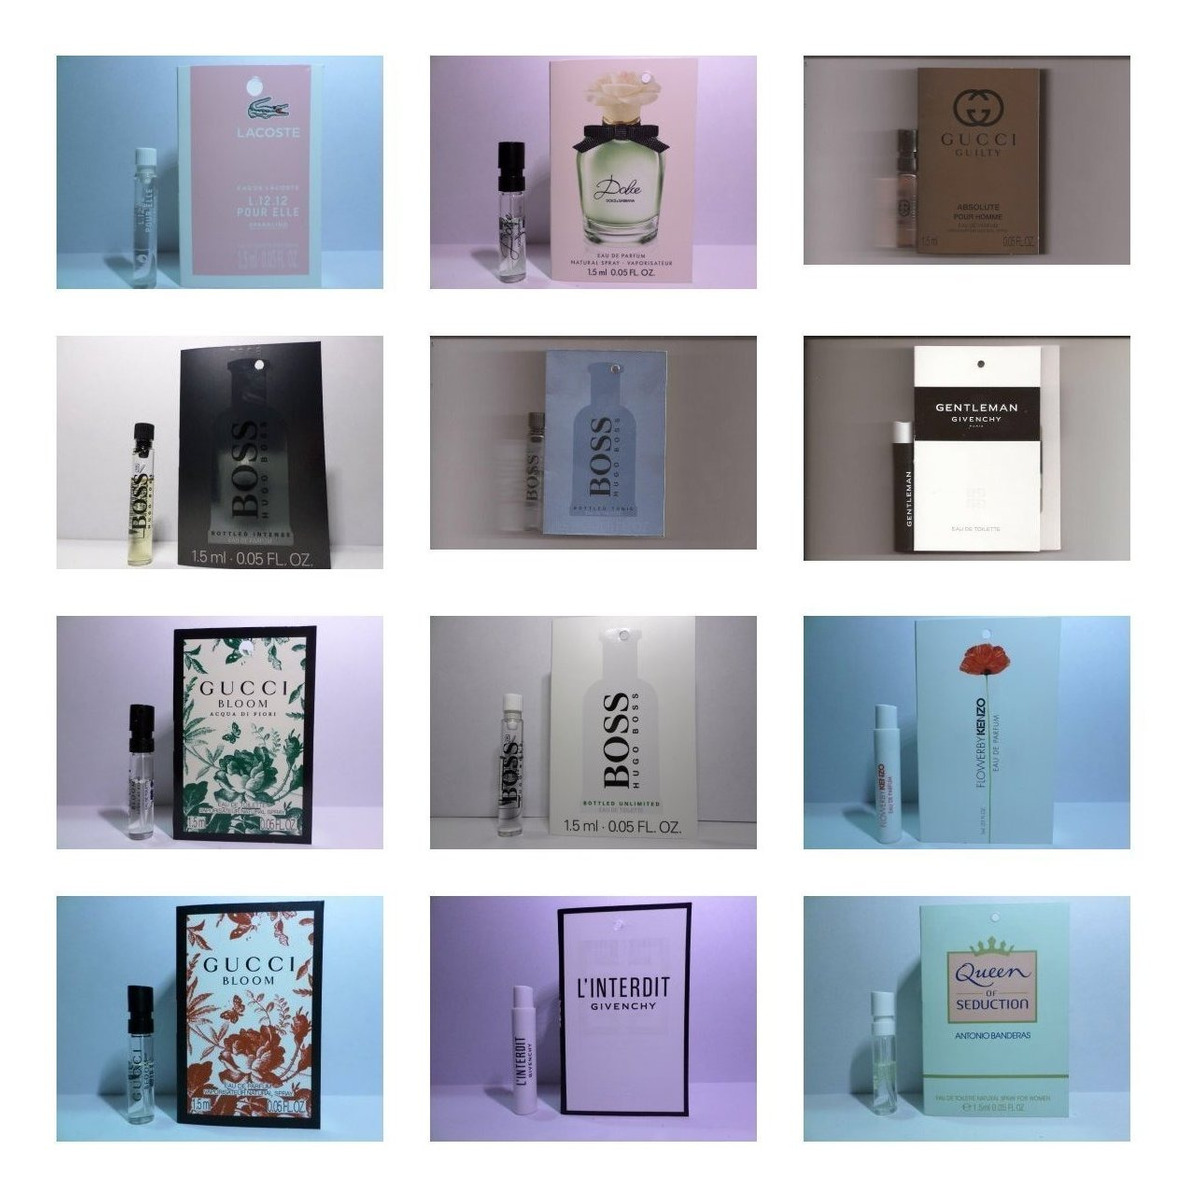 15 Muestras De Perfume A Elegir Varios Aromas Originales